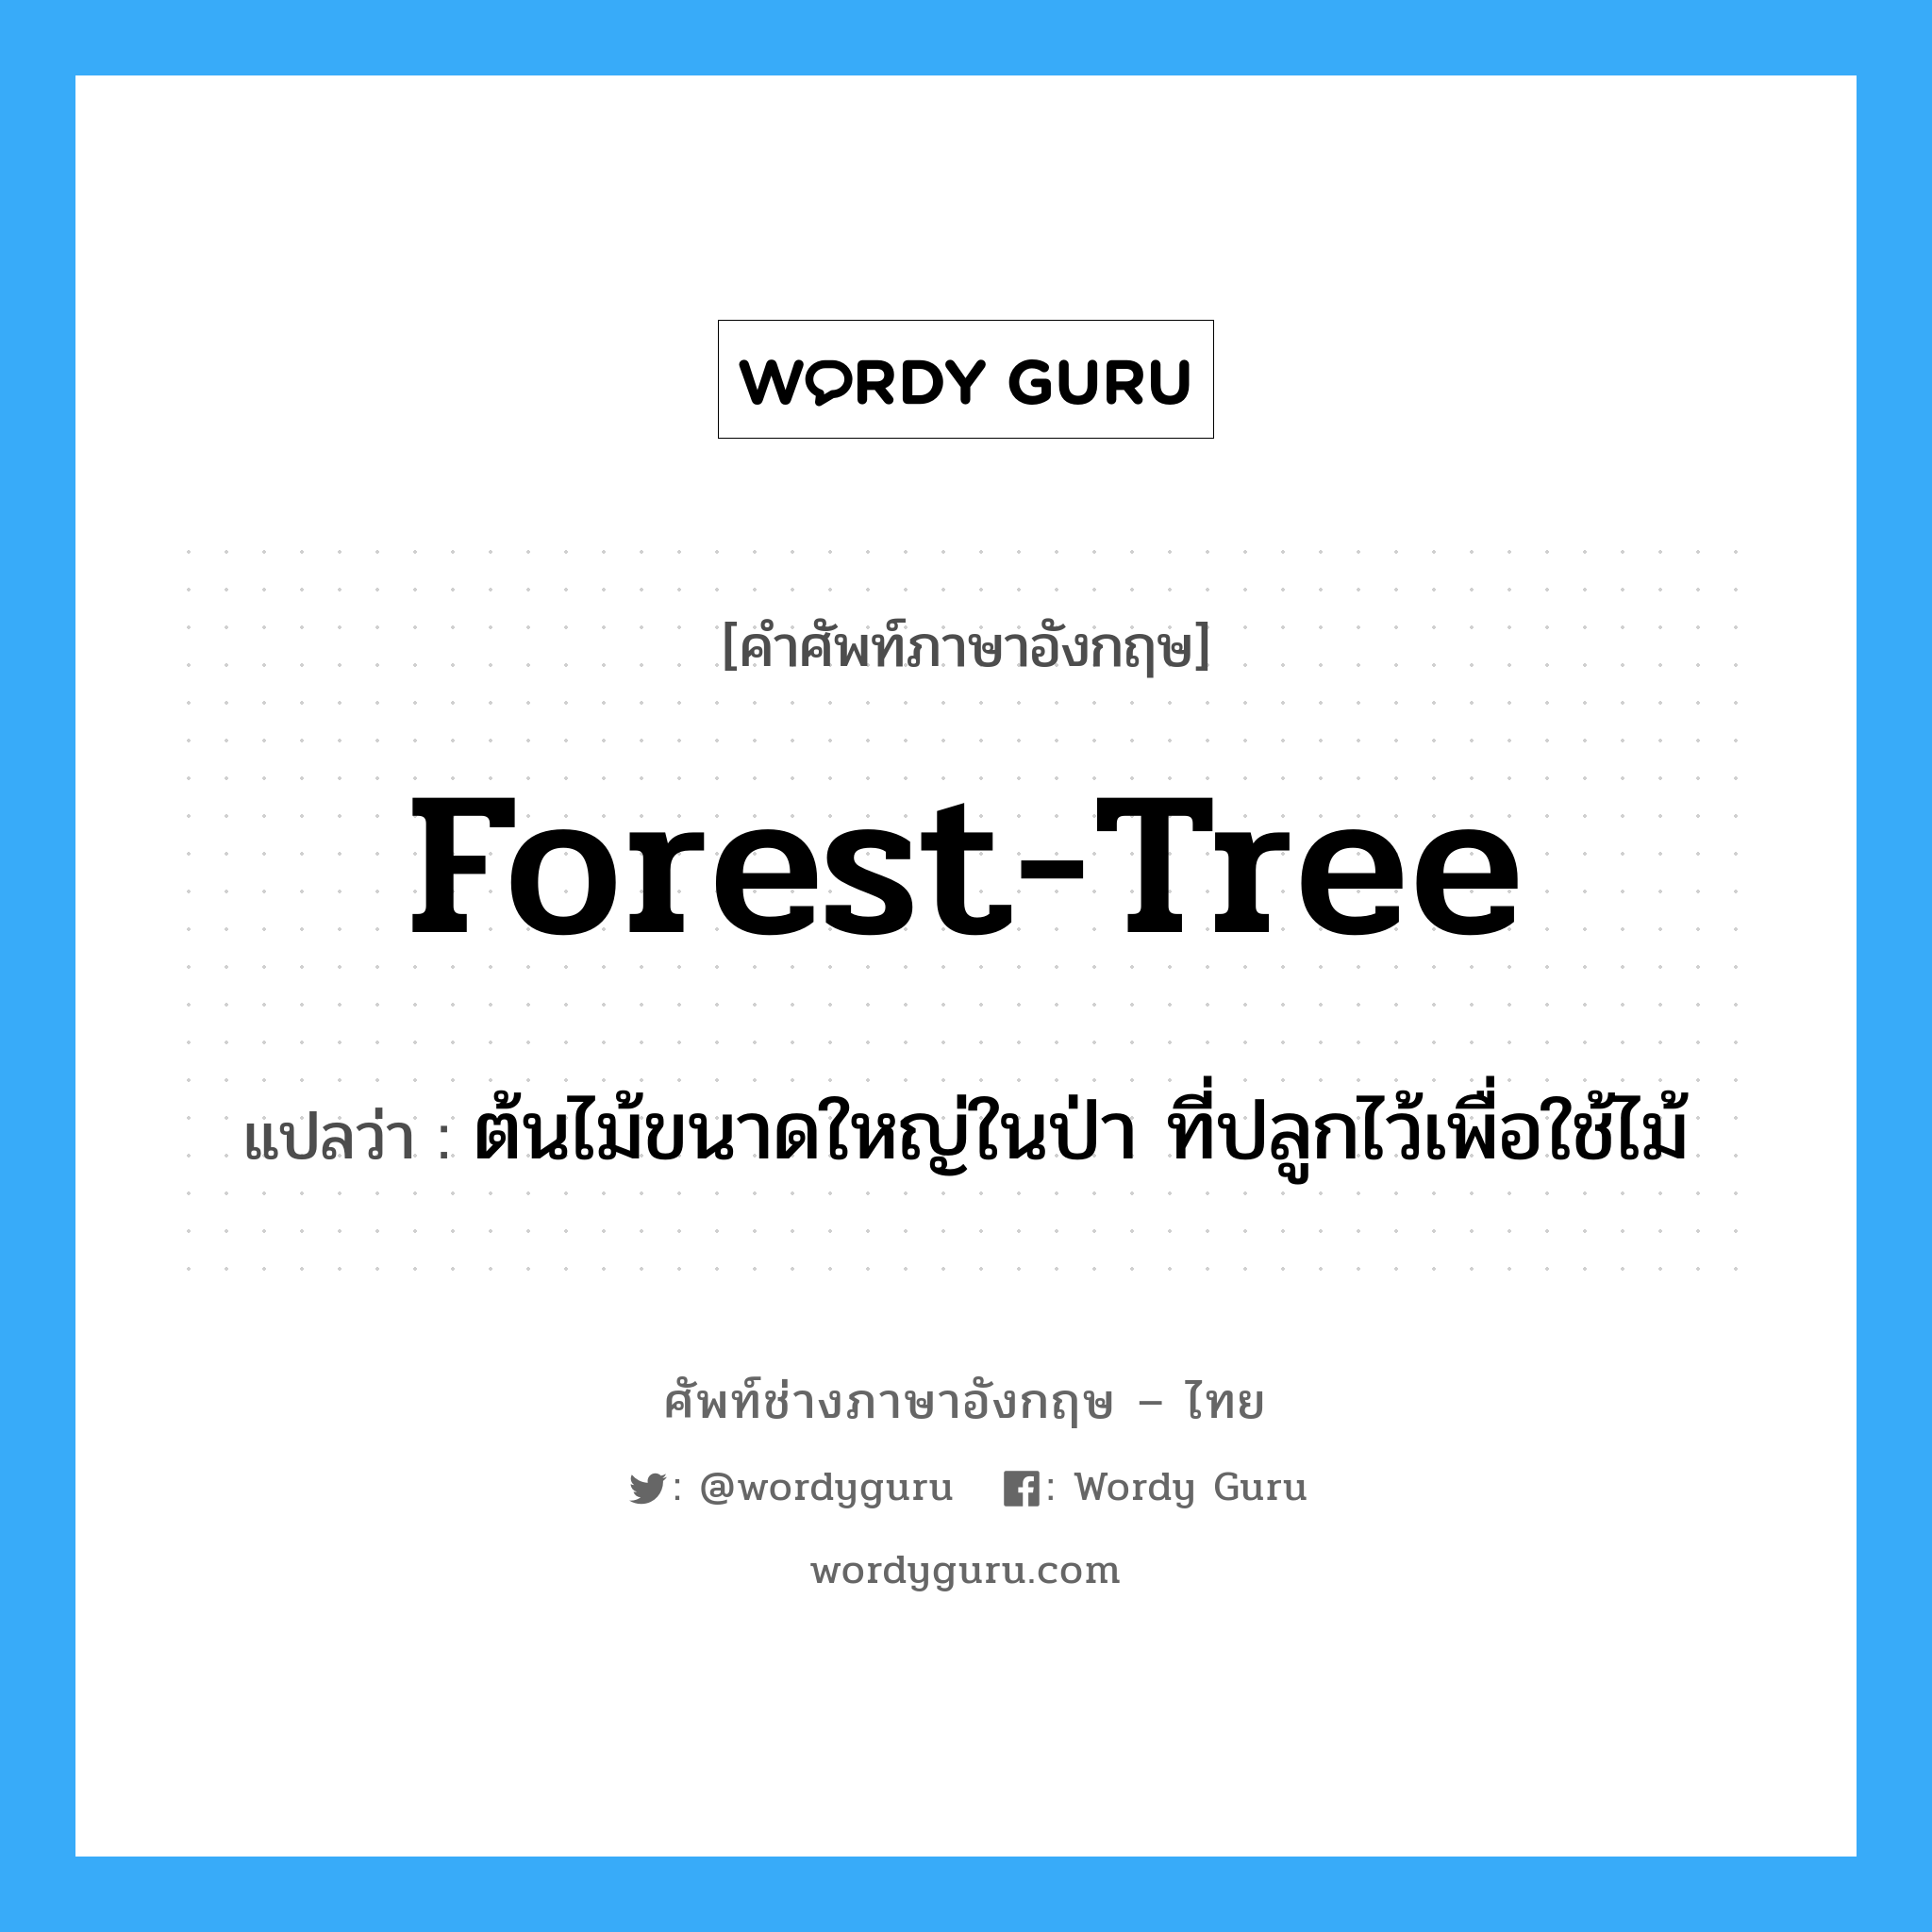 ต้นไม้ขนาดใหญ่ในป่า ที่ปลูกไว้เพื่อใช้ไม้ ภาษาอังกฤษ?, คำศัพท์ช่างภาษาอังกฤษ - ไทย ต้นไม้ขนาดใหญ่ในป่า ที่ปลูกไว้เพื่อใช้ไม้ คำศัพท์ภาษาอังกฤษ ต้นไม้ขนาดใหญ่ในป่า ที่ปลูกไว้เพื่อใช้ไม้ แปลว่า forest-tree